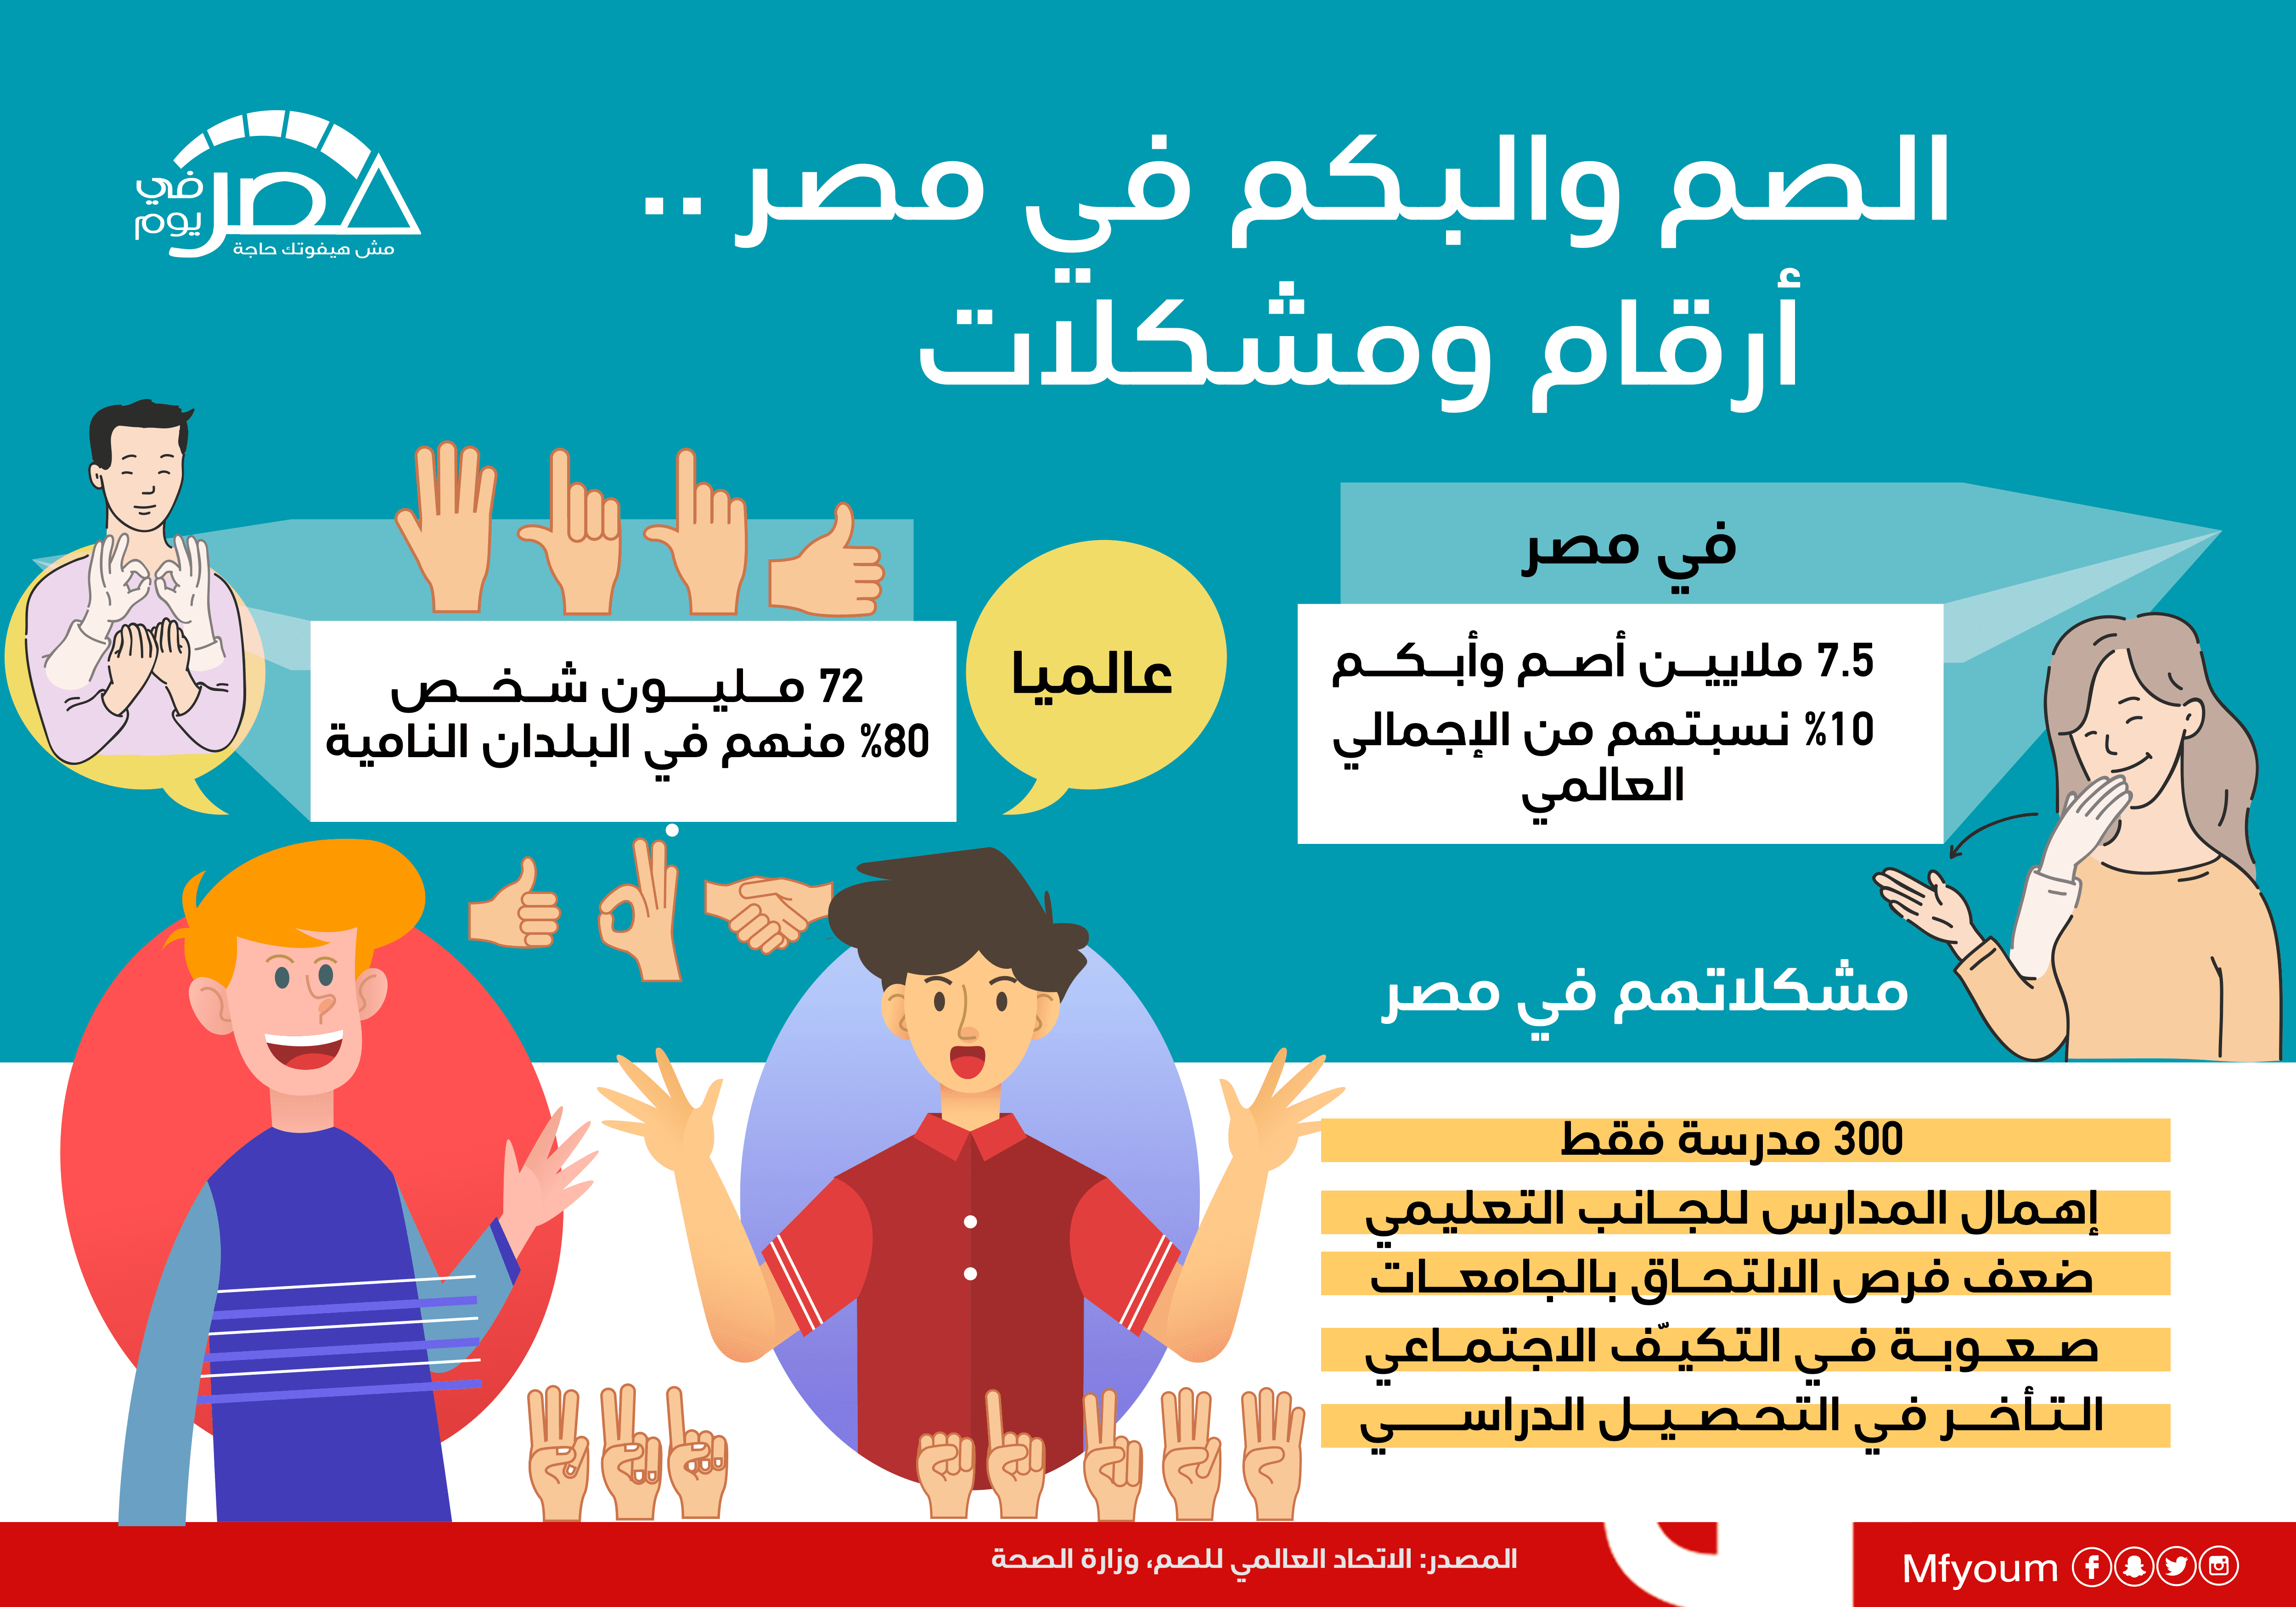 الصم والبكم في مصر.. أرقام ومشكلات (إنفوجراف)